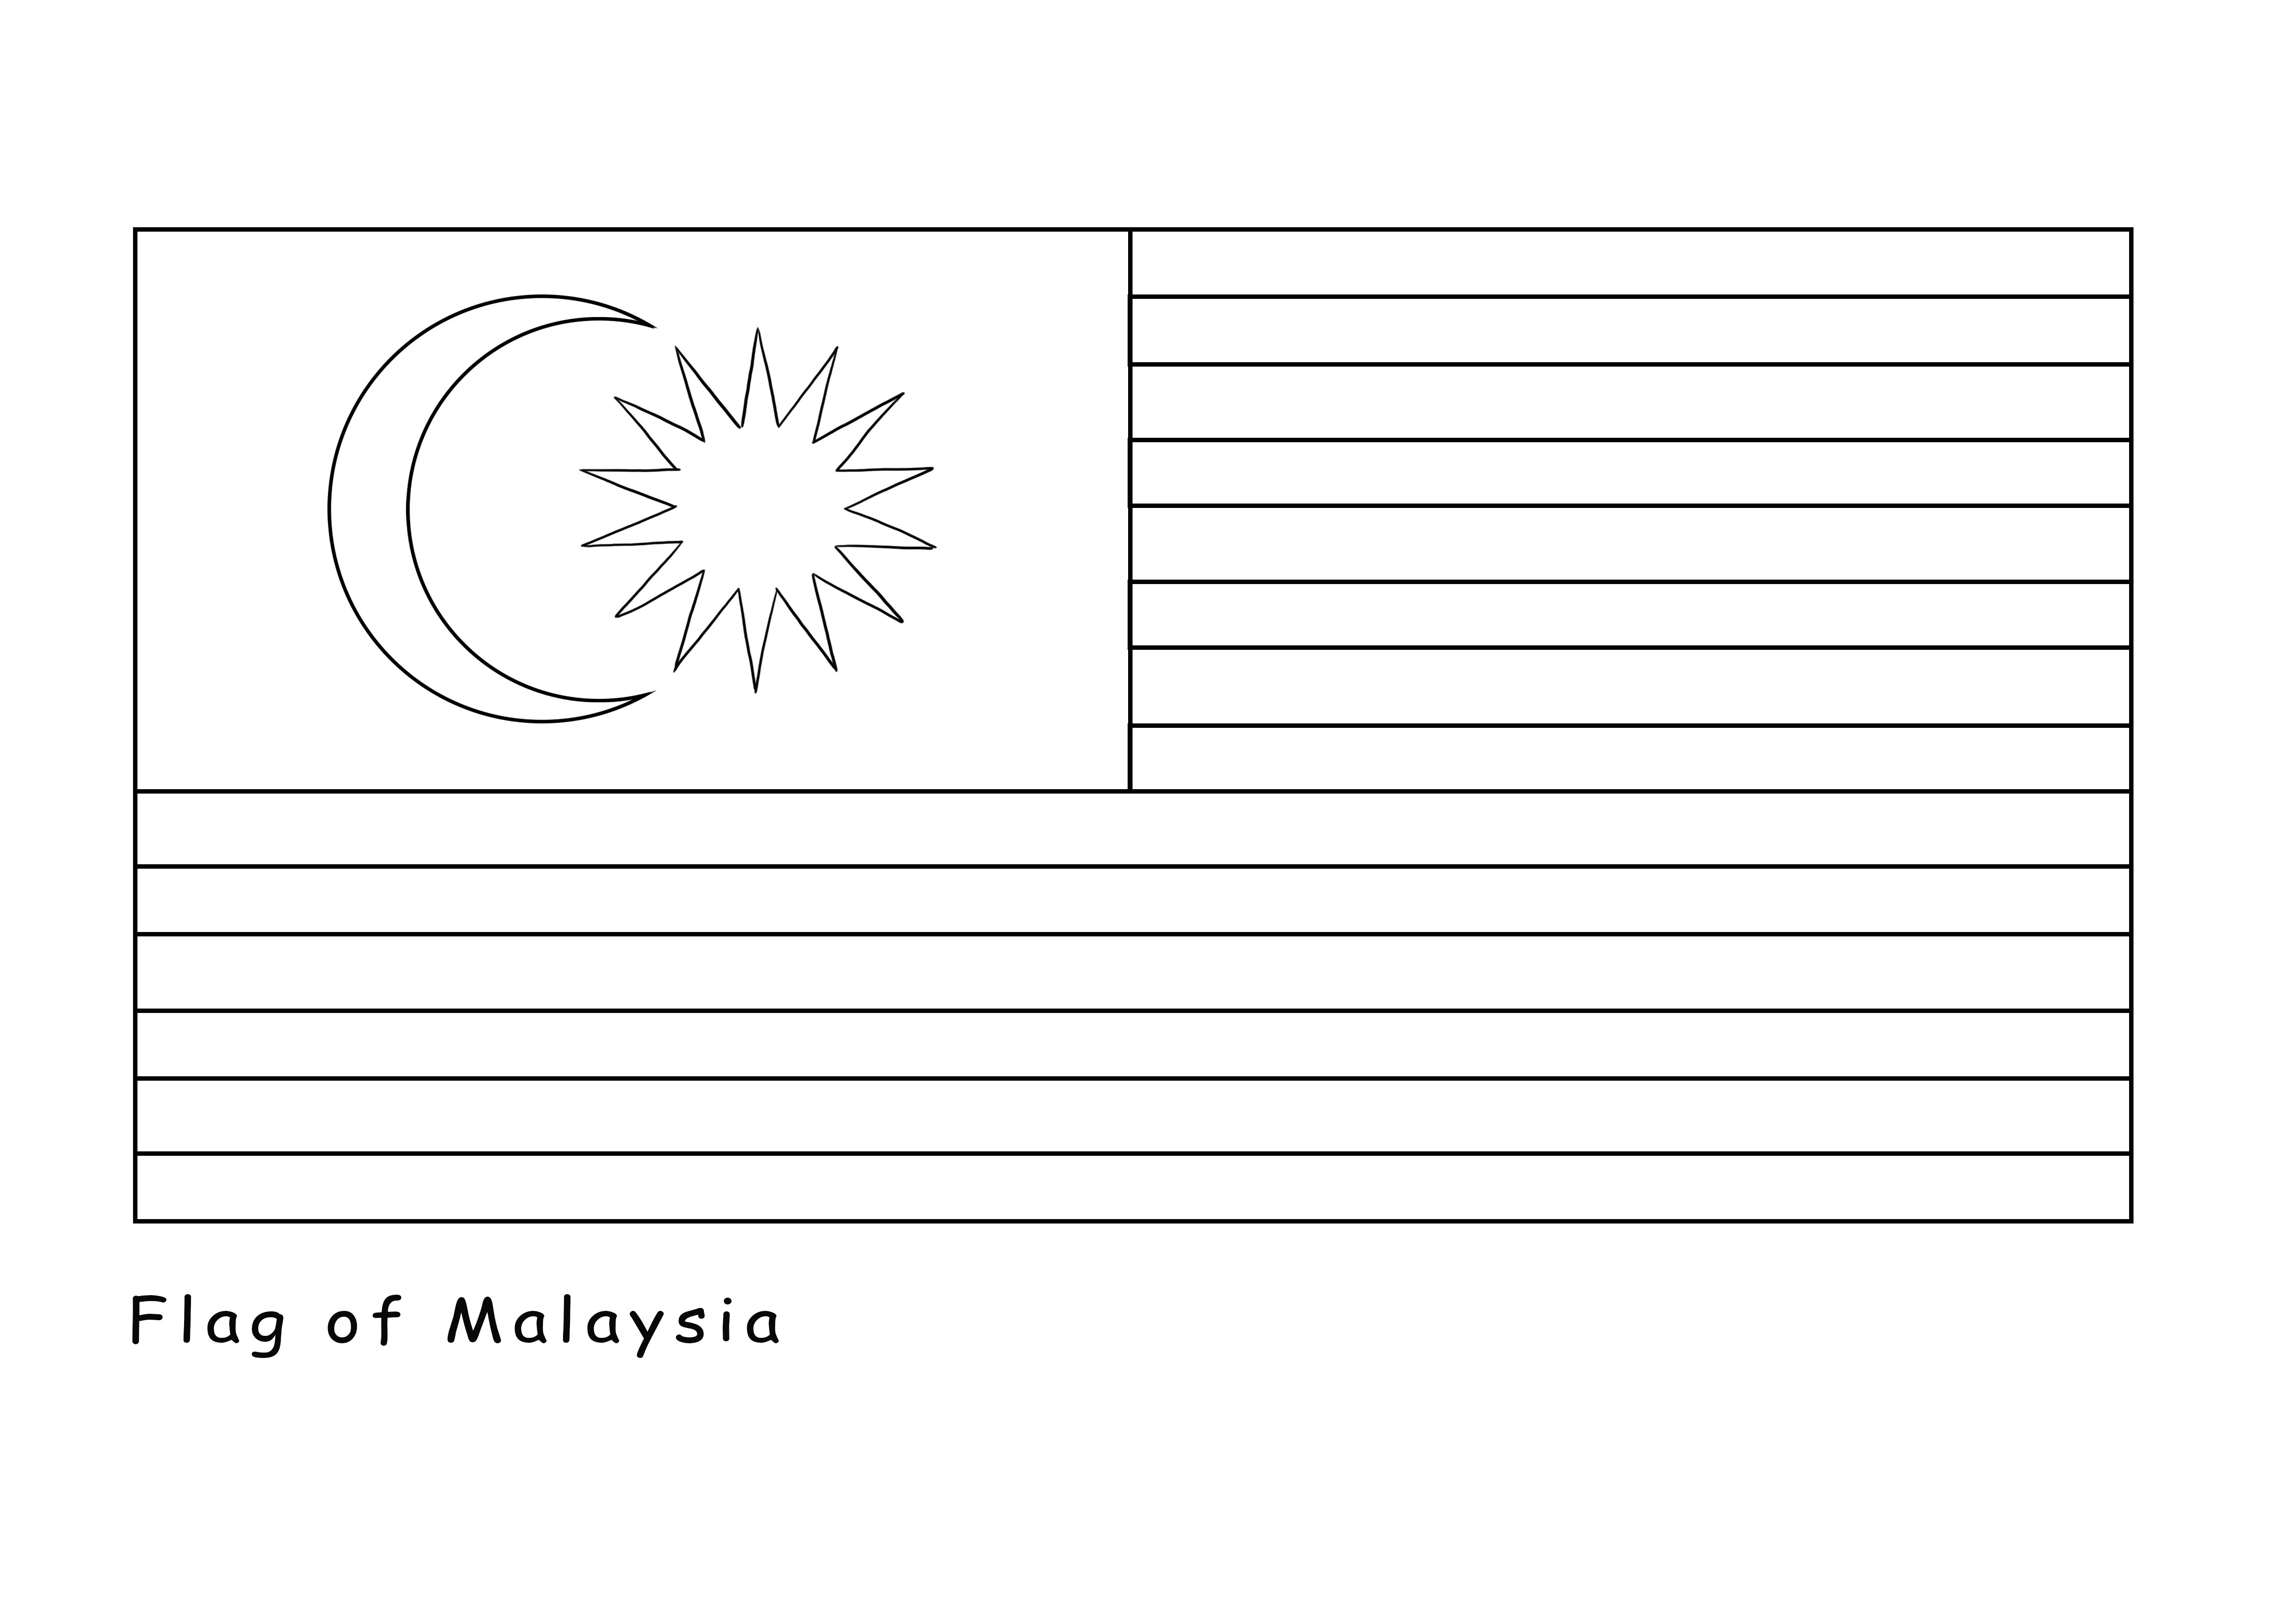 Malezya Bayrağının ücretsiz yazdırılabilir rengi ücretsiz olarak sunulmaktadır.